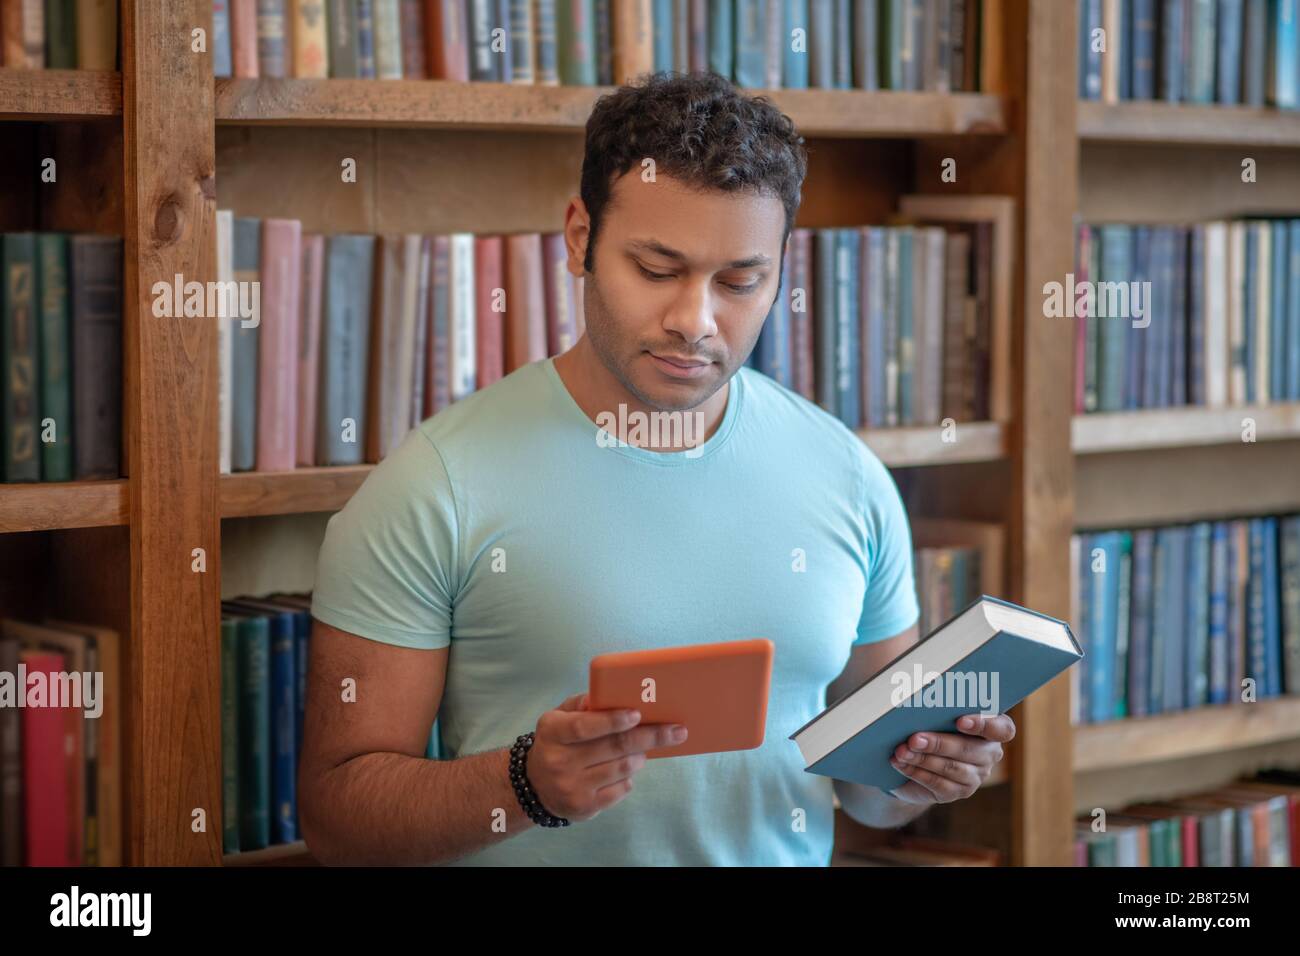 Homme aux cheveux sombres avec une tablette dans les mains regardant le livre Banque D'Images